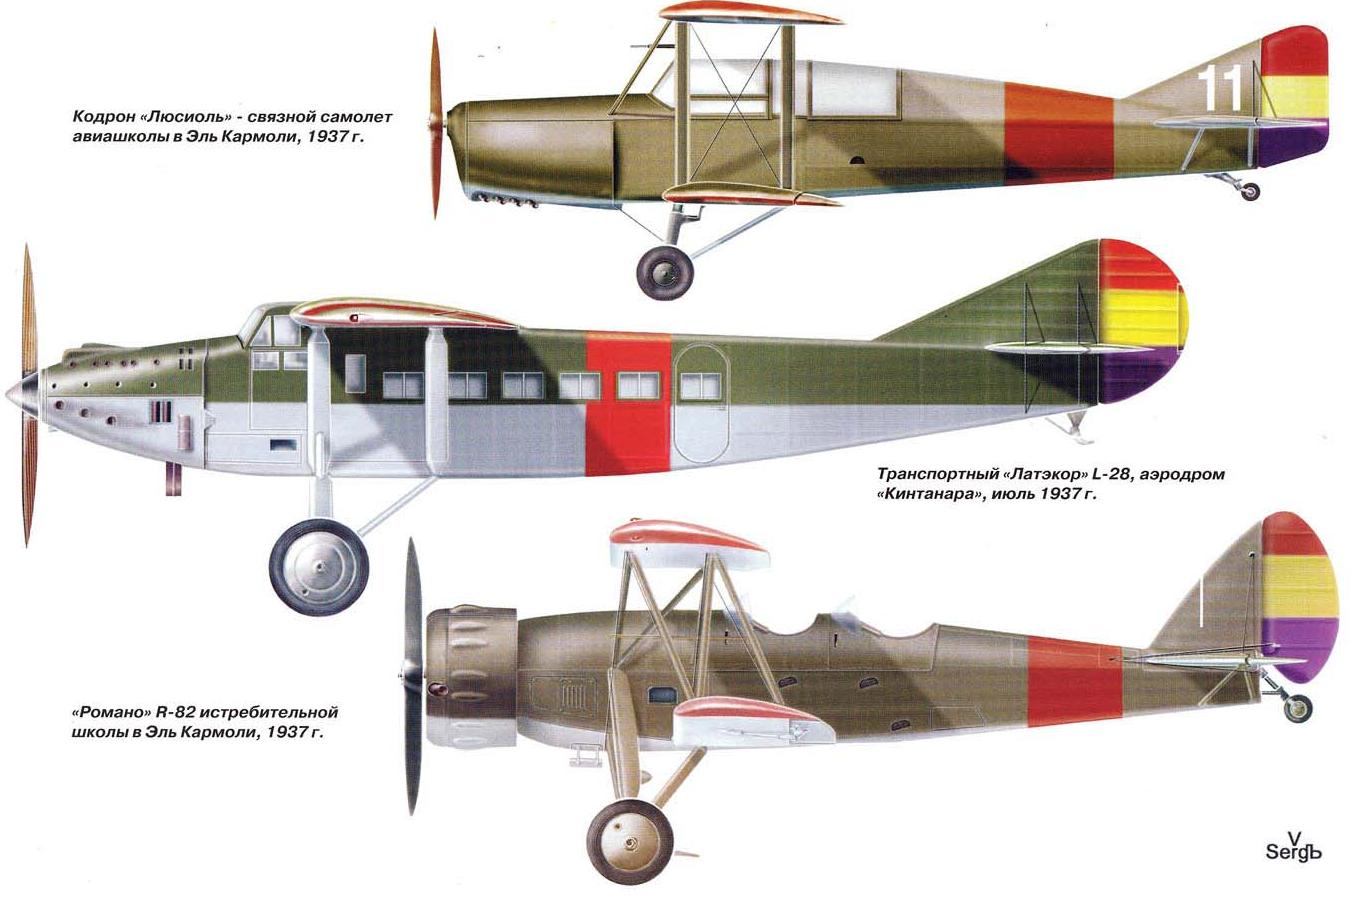 Красные крылья Франции. Французские самолеты и летчики на фронтах испанской гражданской войны